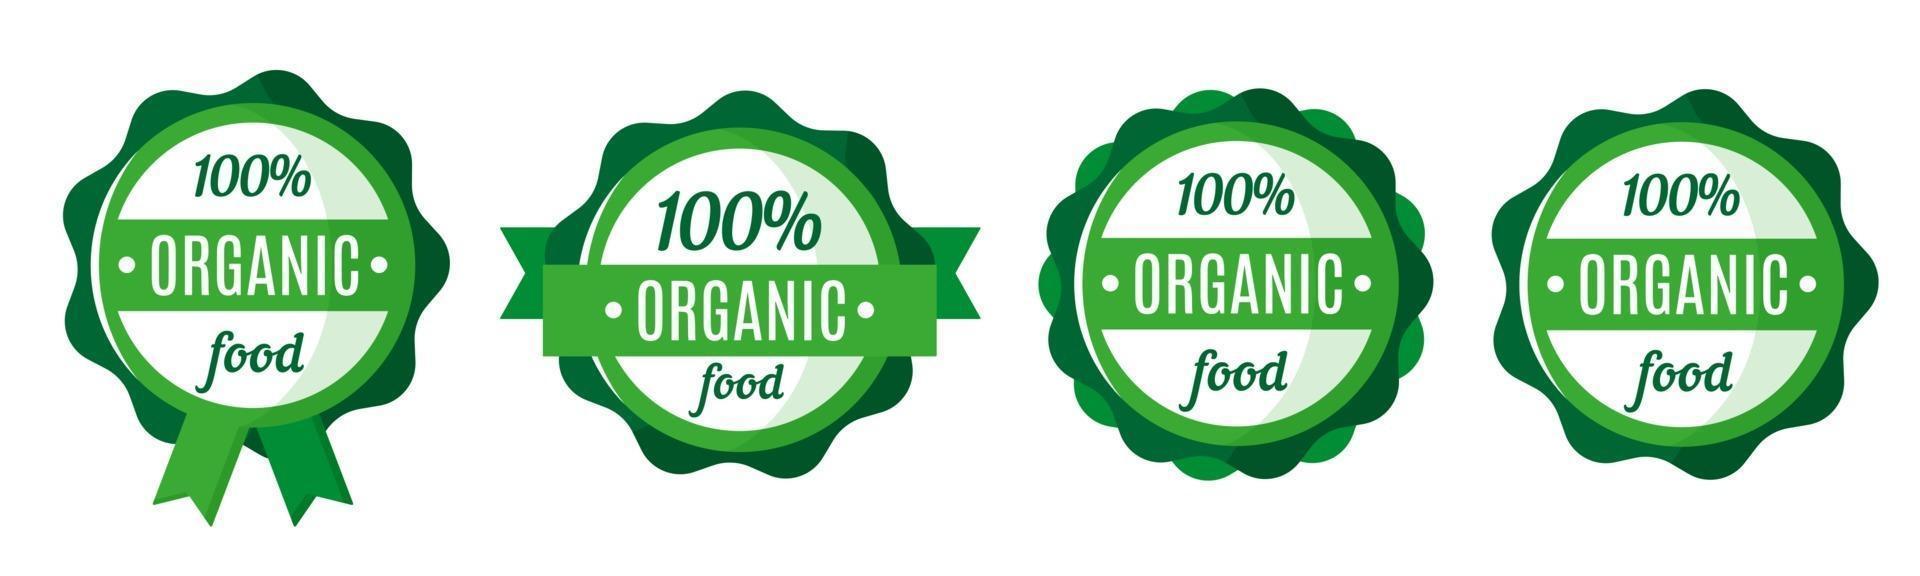 Vektorsatz runder grüner Bio- und Frischwarenabzeichen, -anhänger oder -etiketten. Design von Öko-Marktetiketten. Öko-Lebensmittel einkaufen. vektor